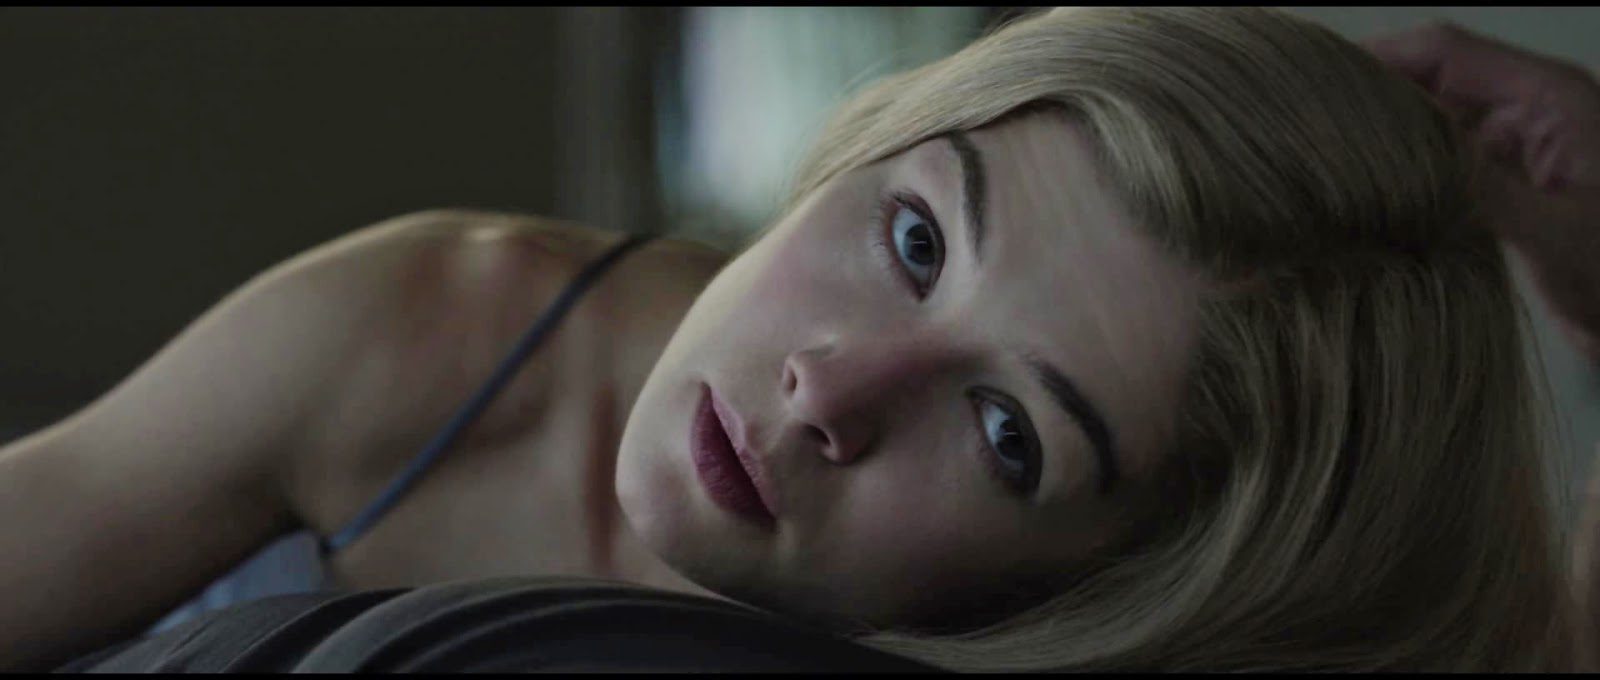 Il film del 2014 di David Fincher, Gone Girl